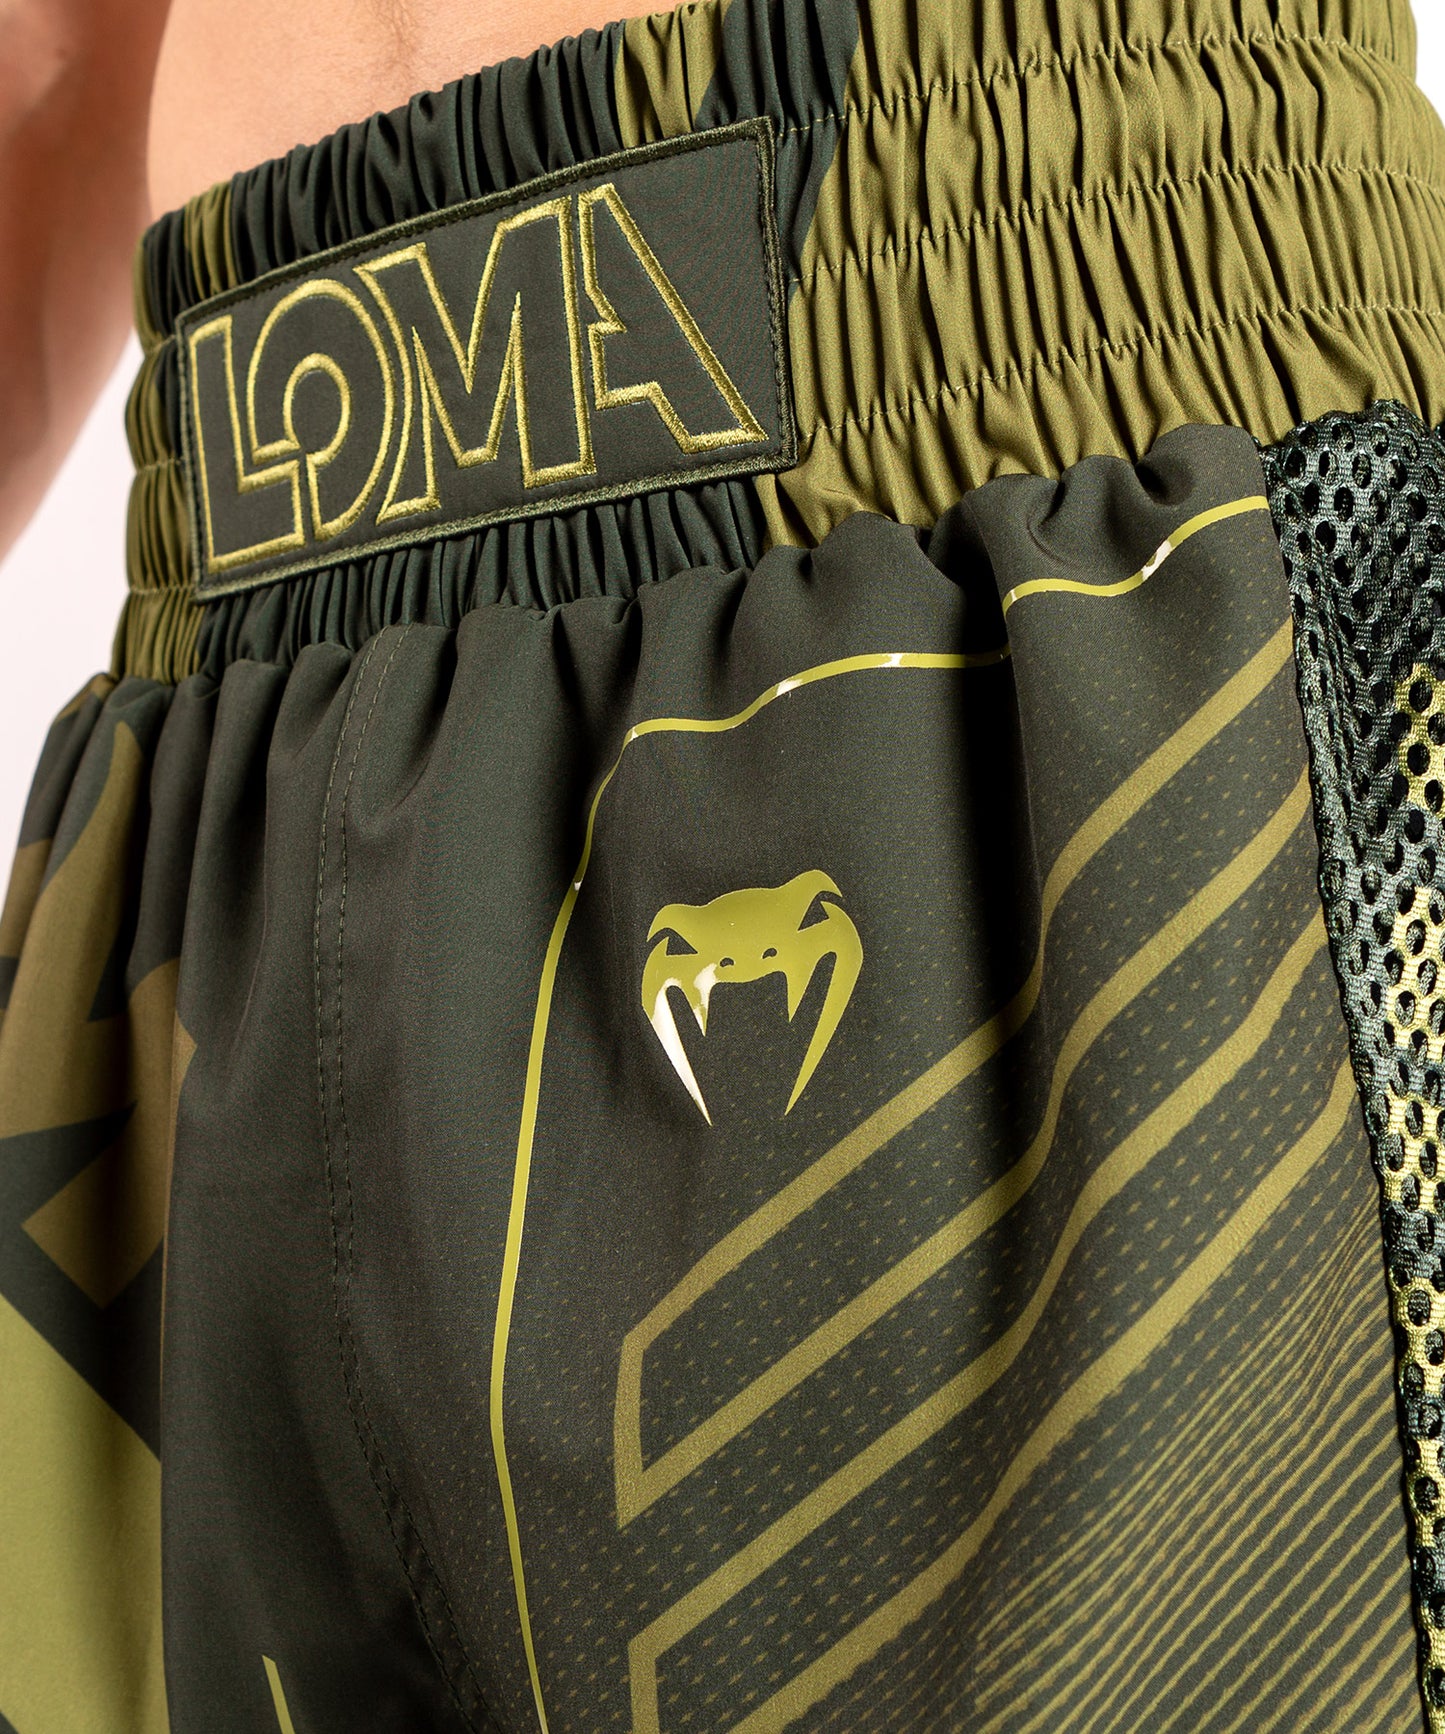 Pantalones cortos de boxeo Venum Loma Commando